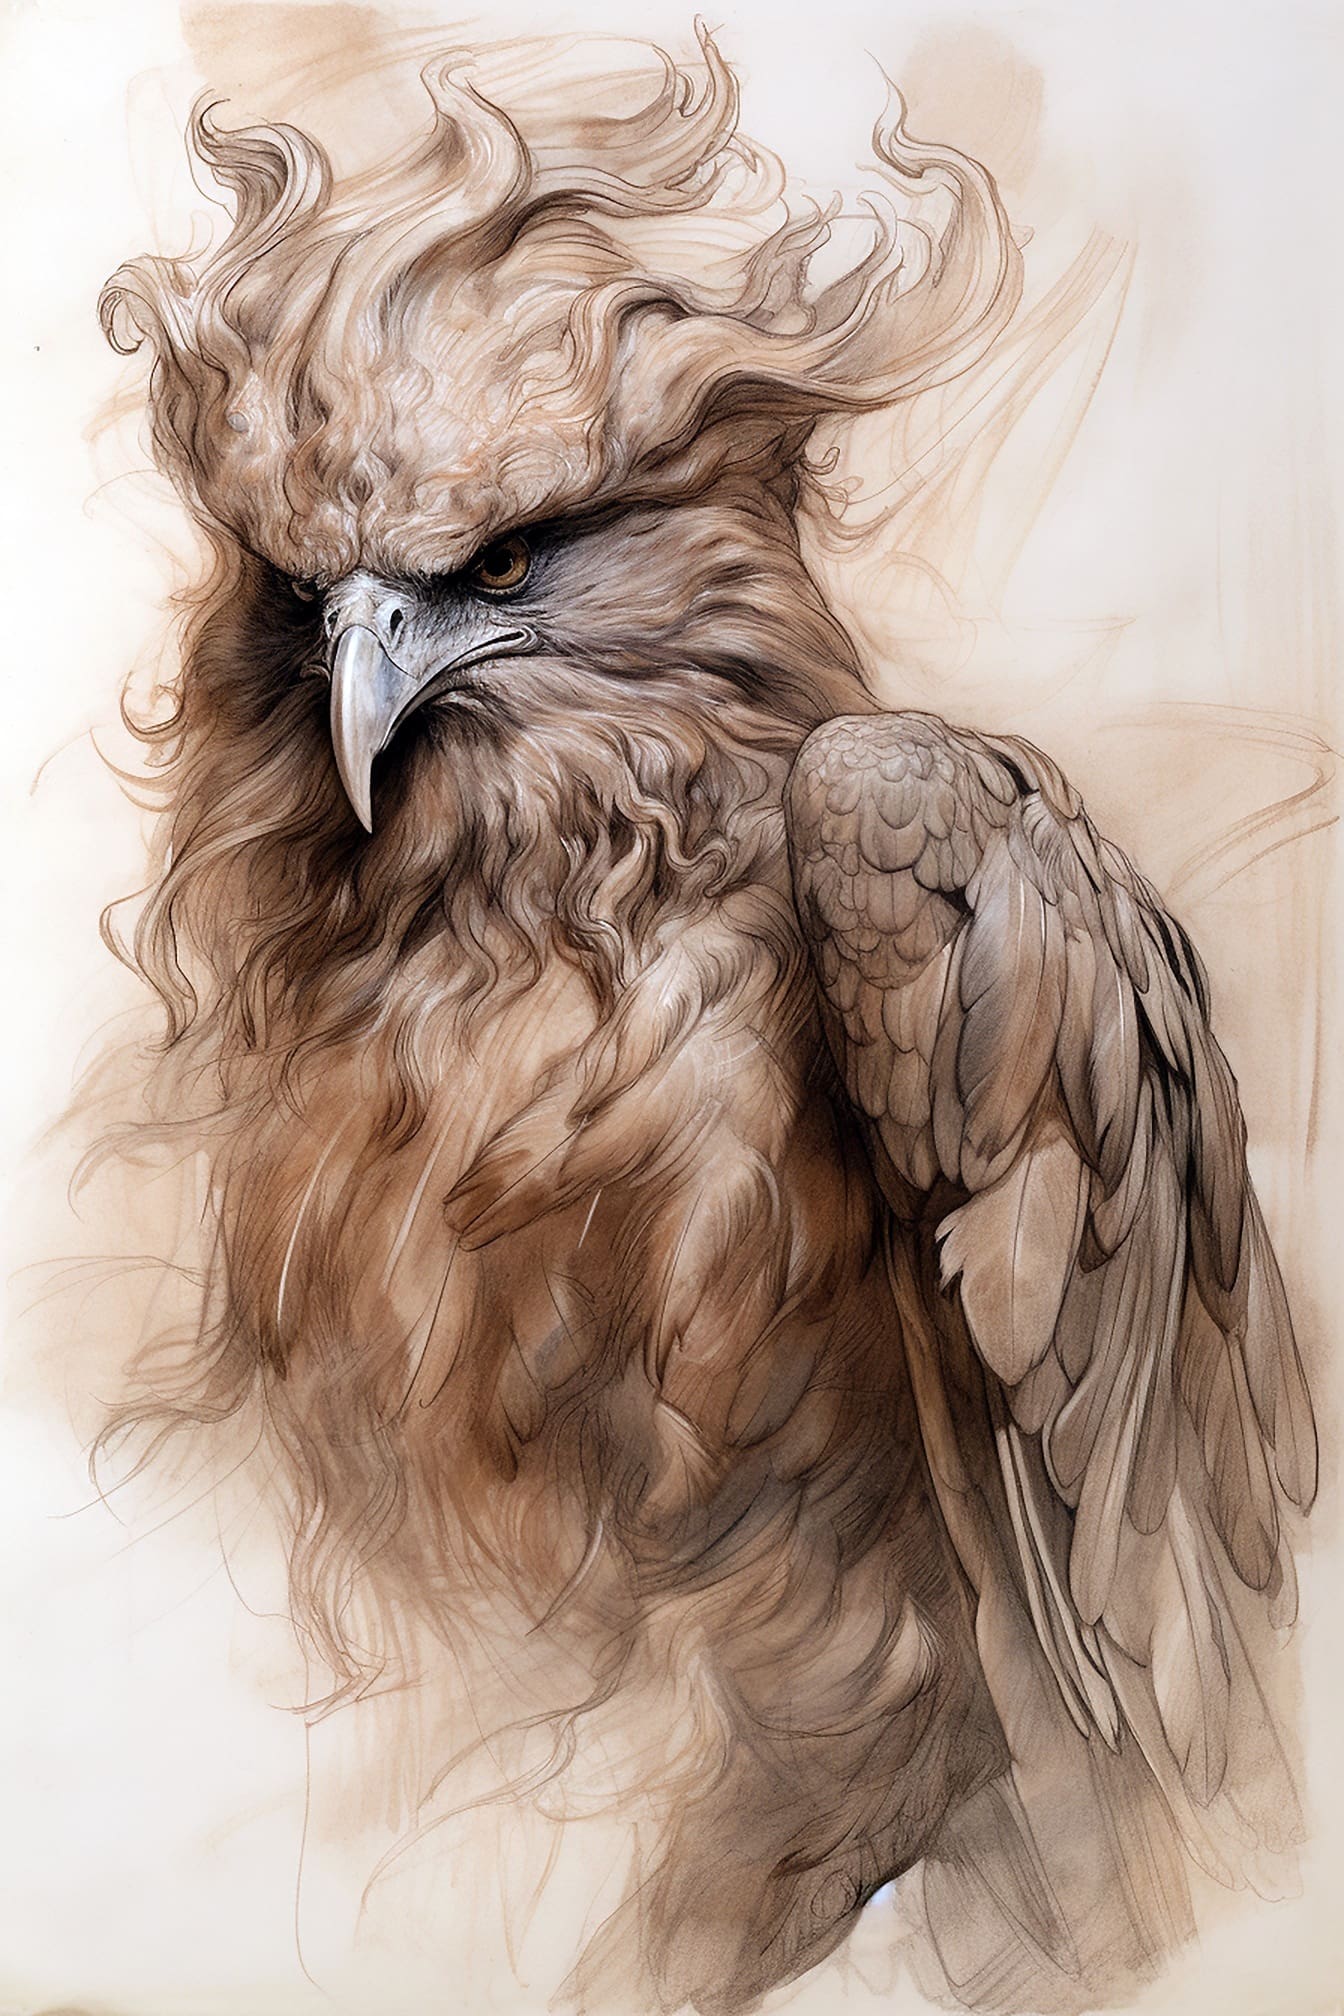 Vẽ nghệ thuật chim săn mồi với màu nâu nhạt